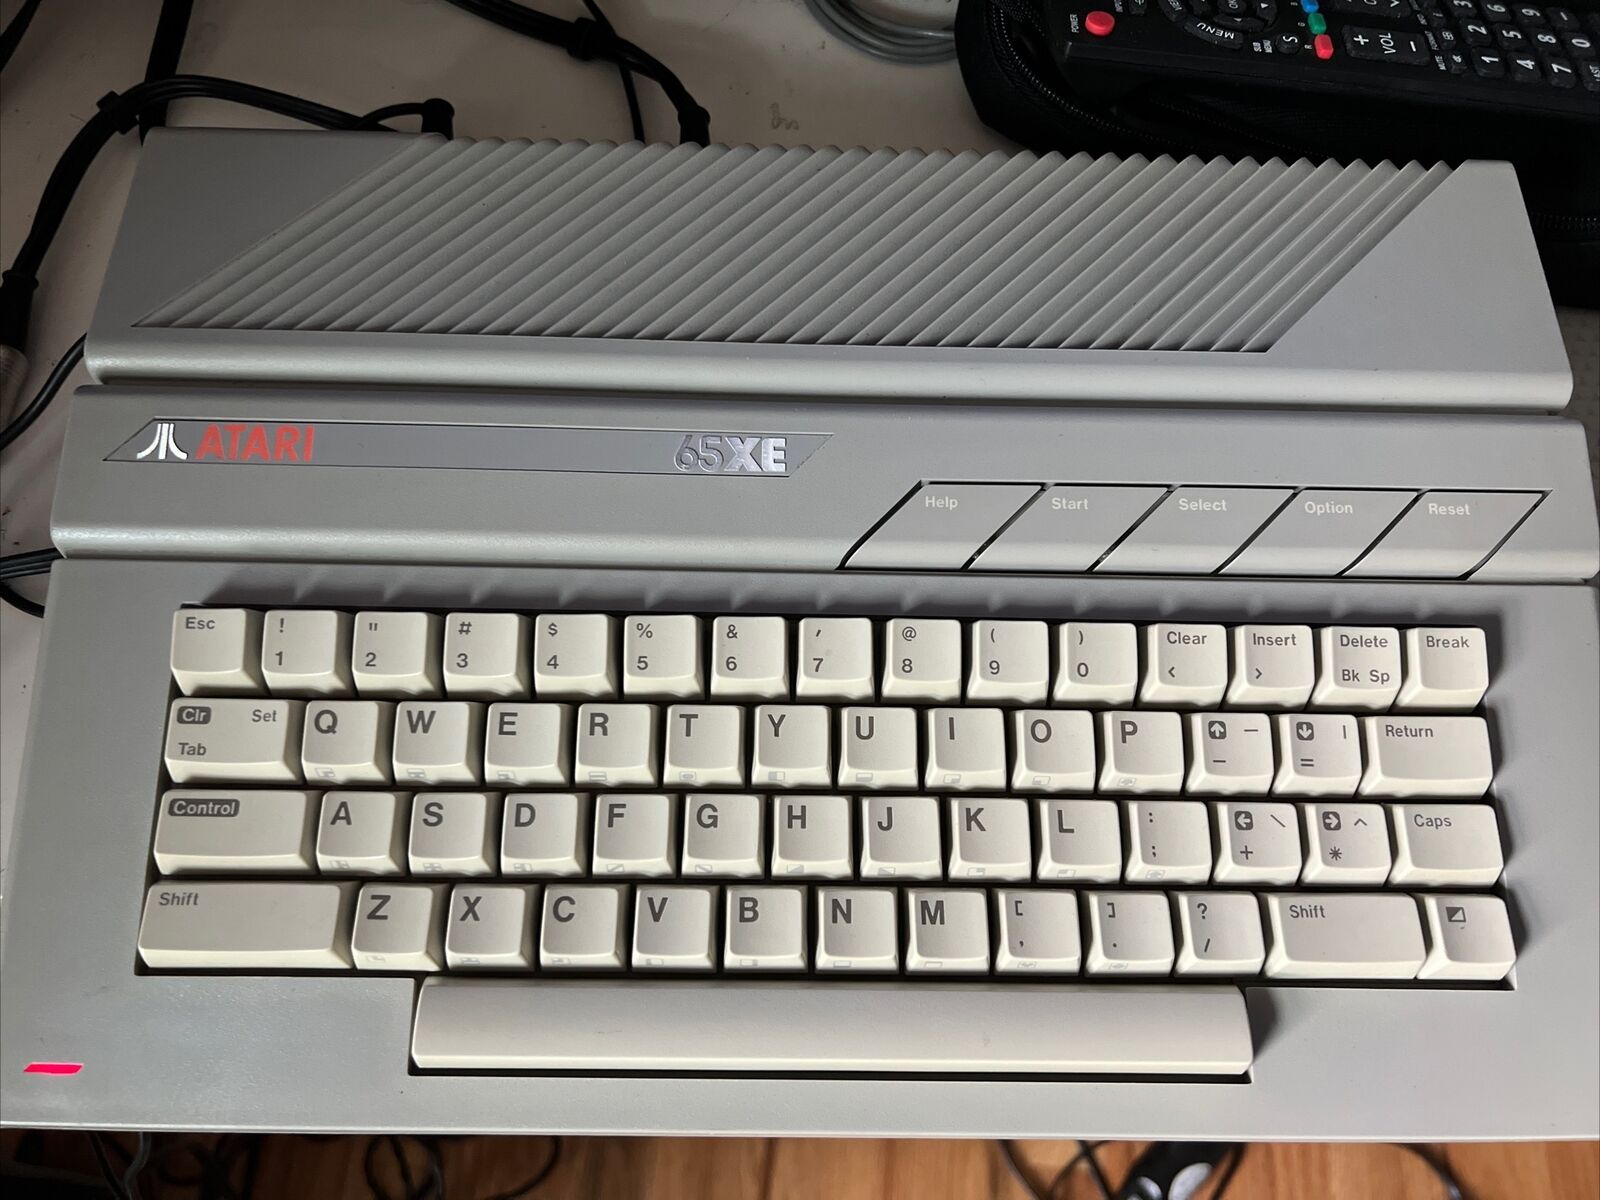 Atari 65xe nice condition (800xl compatible)